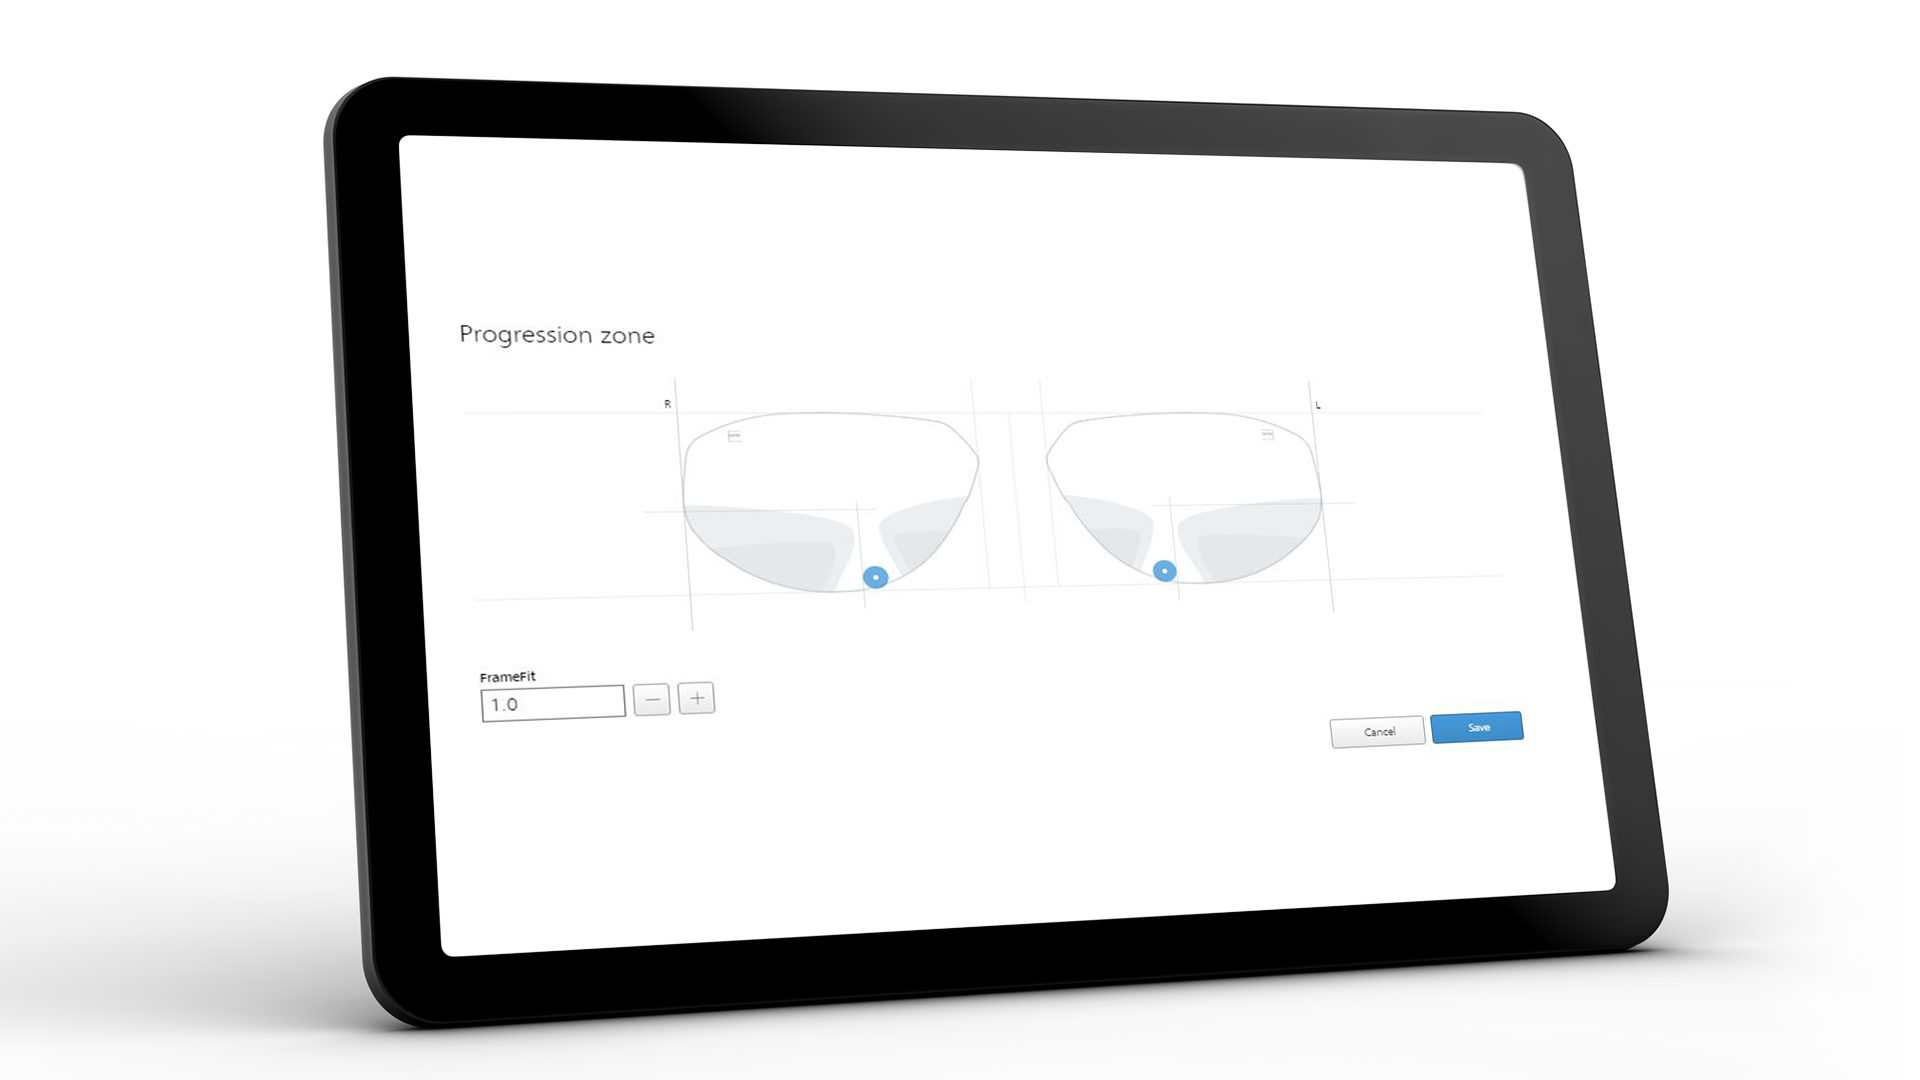 Ekran tabletu przedstawiający interfejs ZEISS VISUSTORE dla działu progresji 